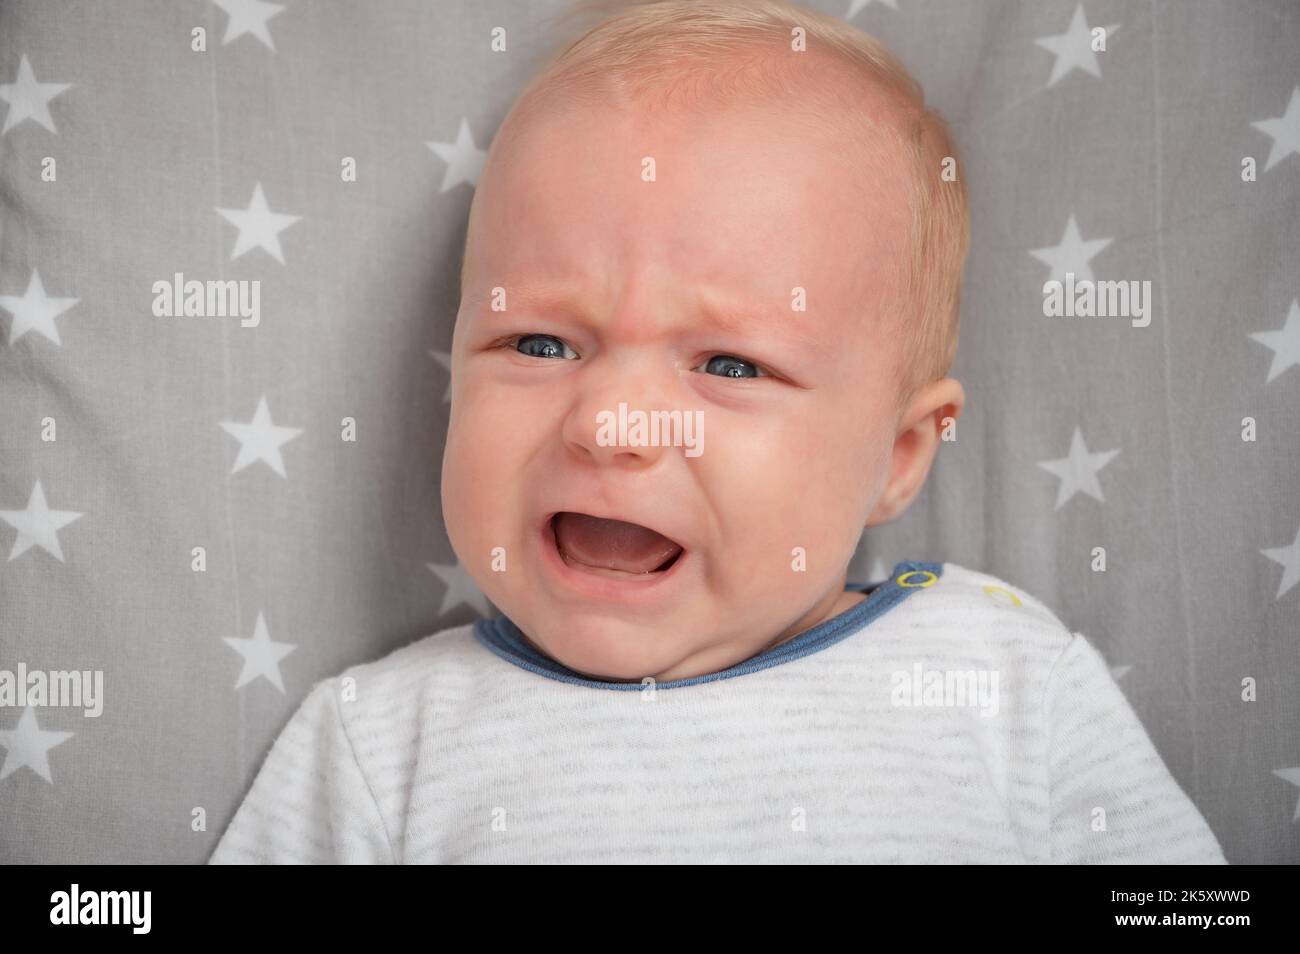 Porträt eines weinenden Neugeborenen, Nahaufnahme. Schneiden Sie das Kind mit blauen Augen. Gesichtsausdruck. Stockfoto